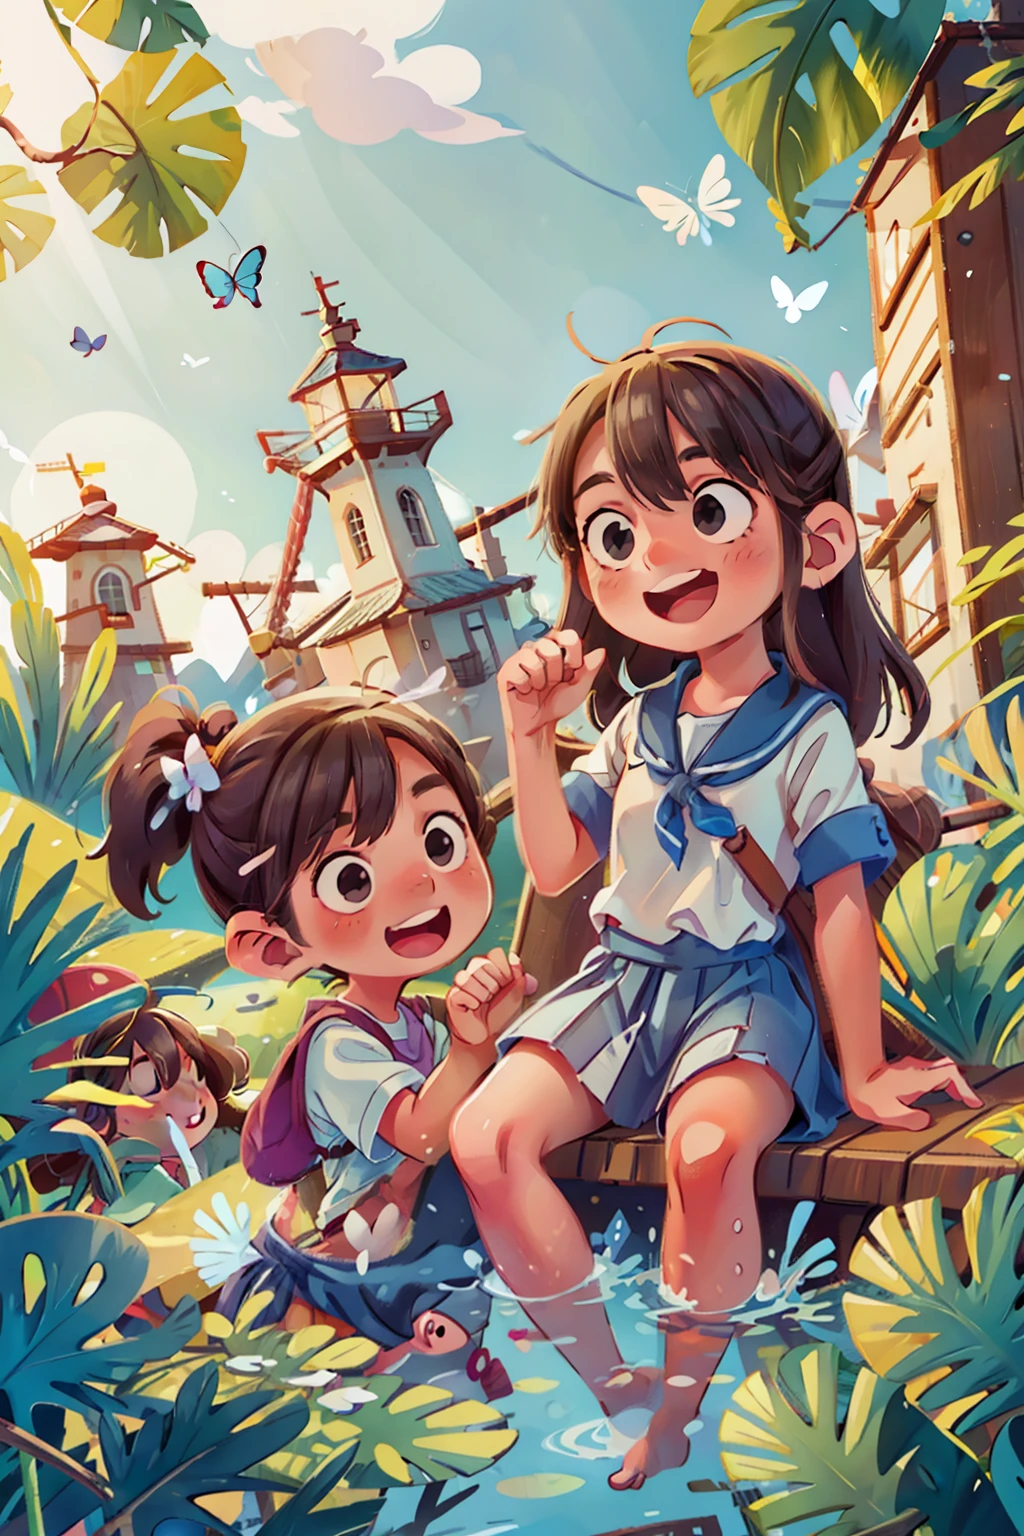 Genera una imagen de dos niñas muy jóvenes felices navegando en un barco., ondas, mar, cielo con nubes blancas. mariposas coloridas, Faro al fondo,